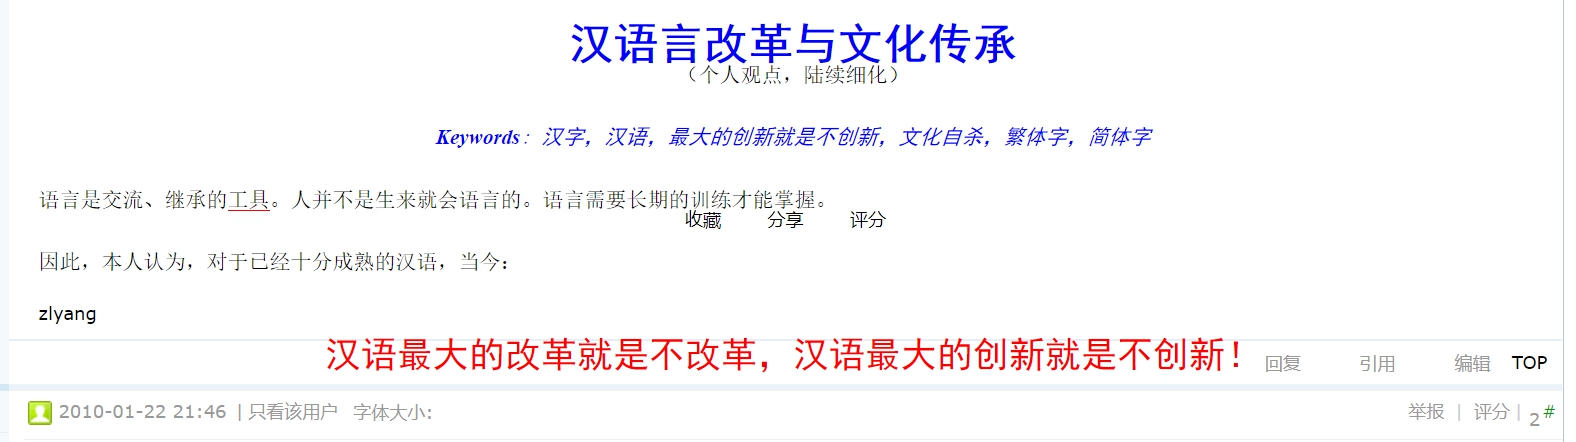 2010-01-20《科学网论坛》的帖子 汉语最大的创新就是不创新.jpg